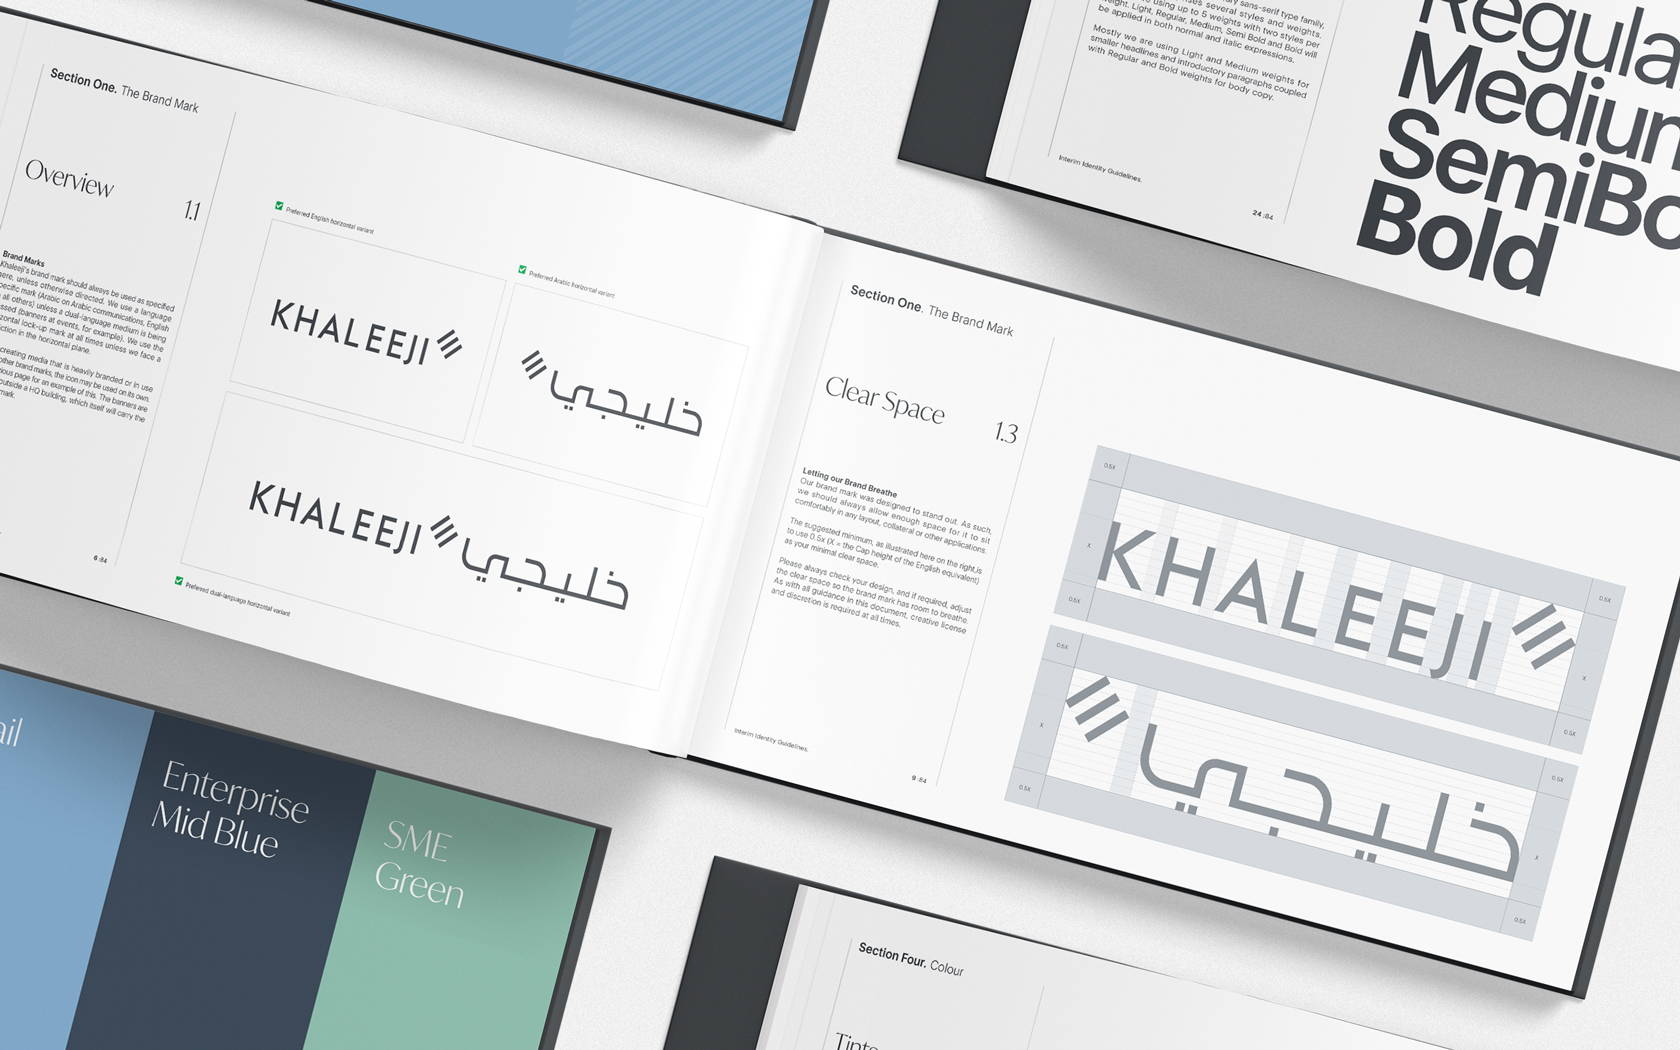 Khaleeji. Brand Guidelines spreads